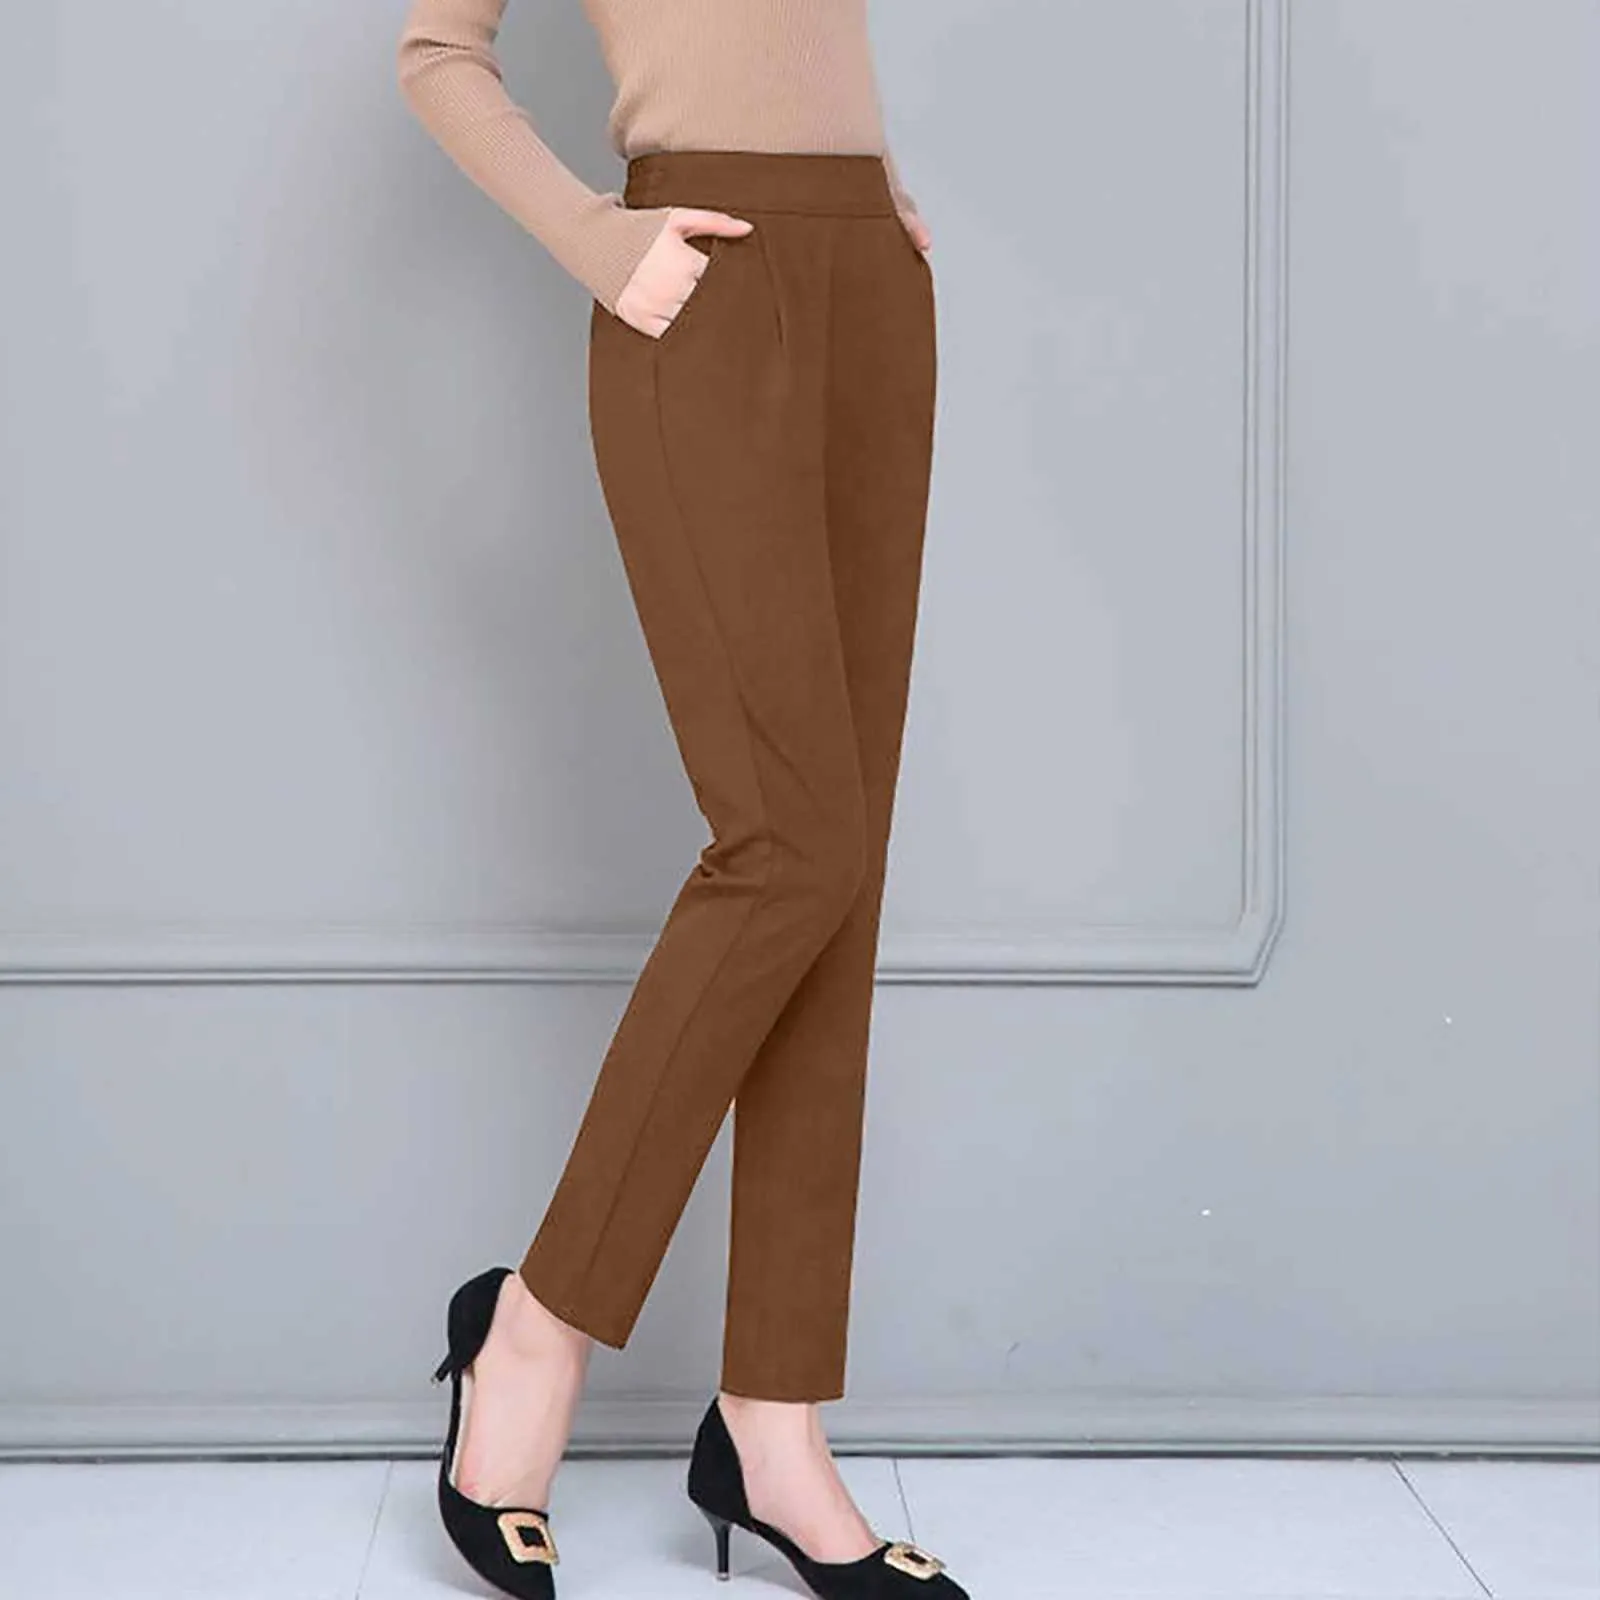 2021 Nya byxor passar höga midjabyxor kvinnor mode kontorsbyxor chic elegant solid färg casual kvinna byxor # f3 q0801